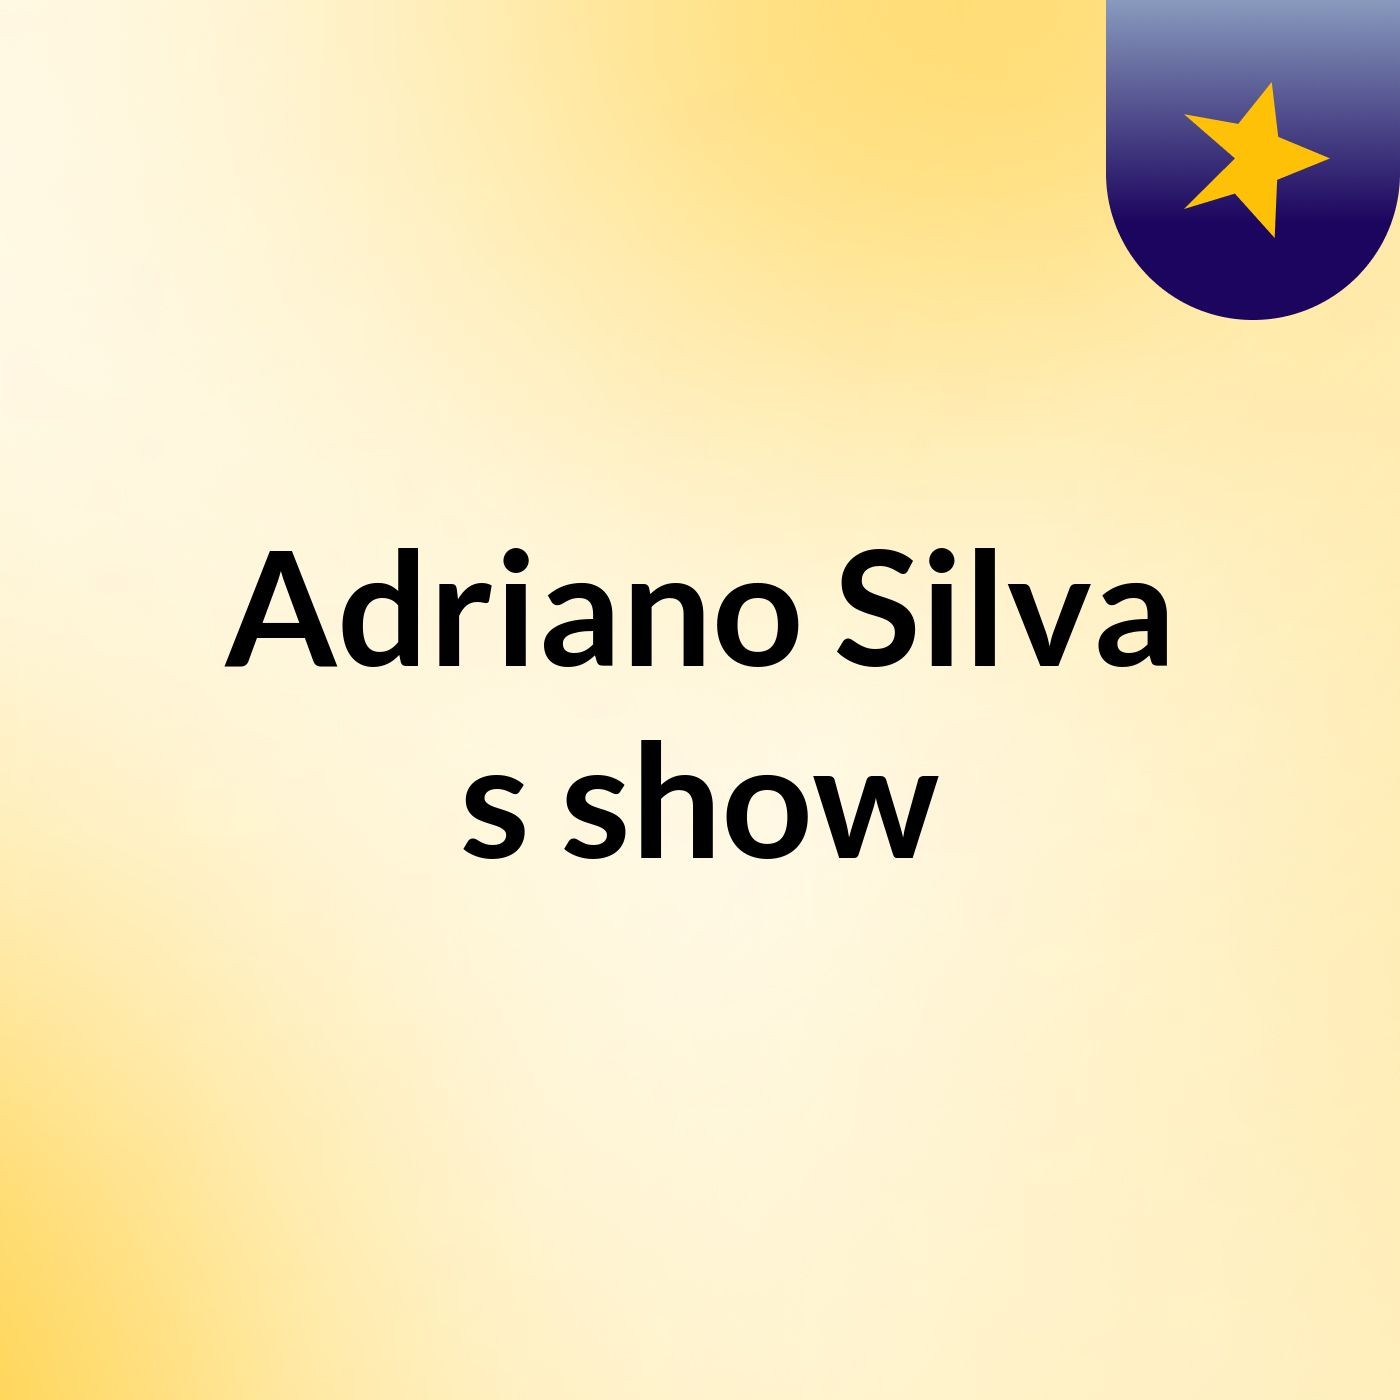 Adriano Silva's show